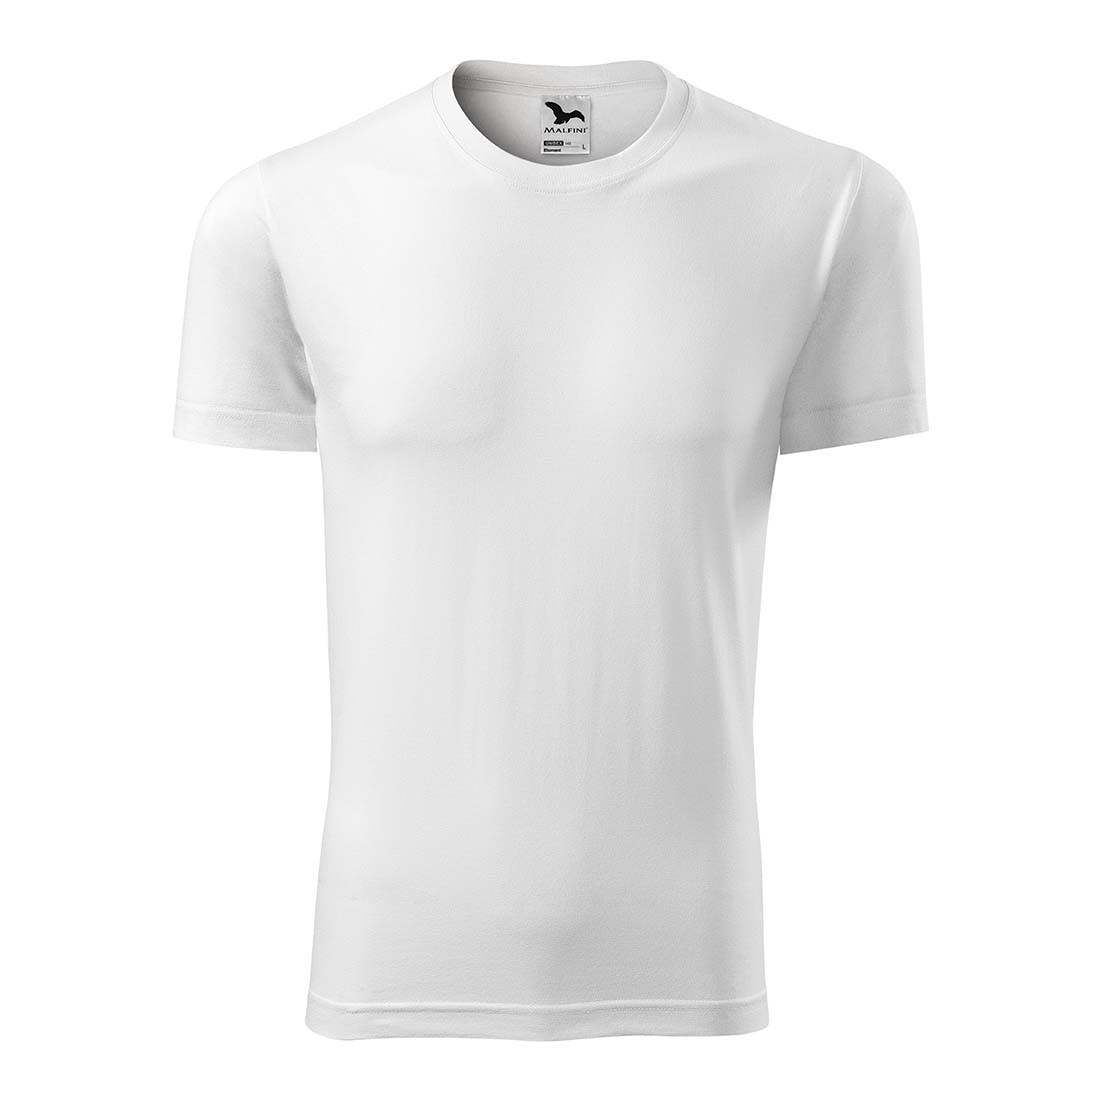 Camiseta unisex - Ropa de protección